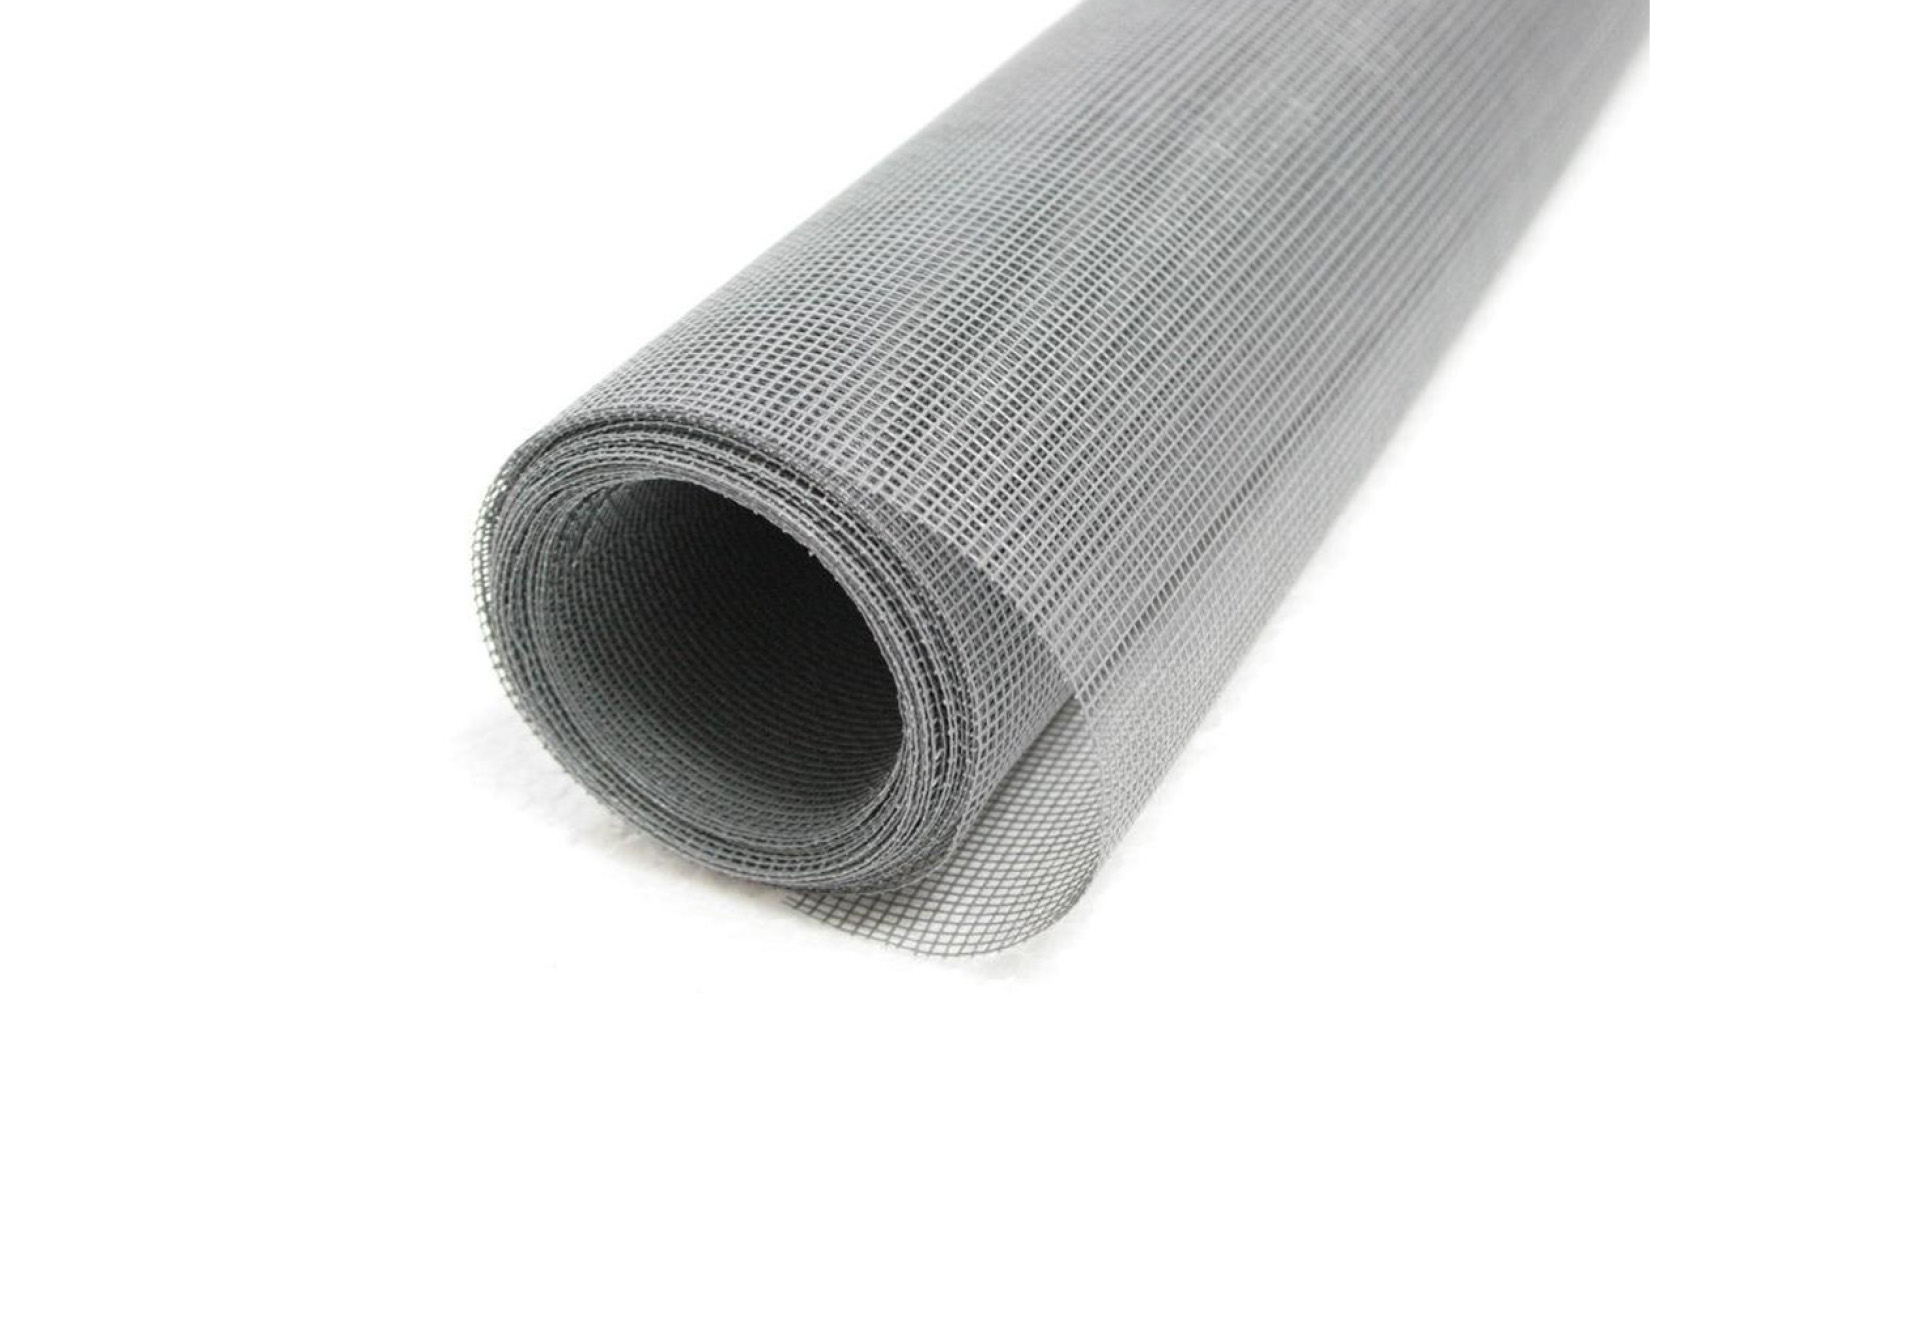 White and gray fiber net